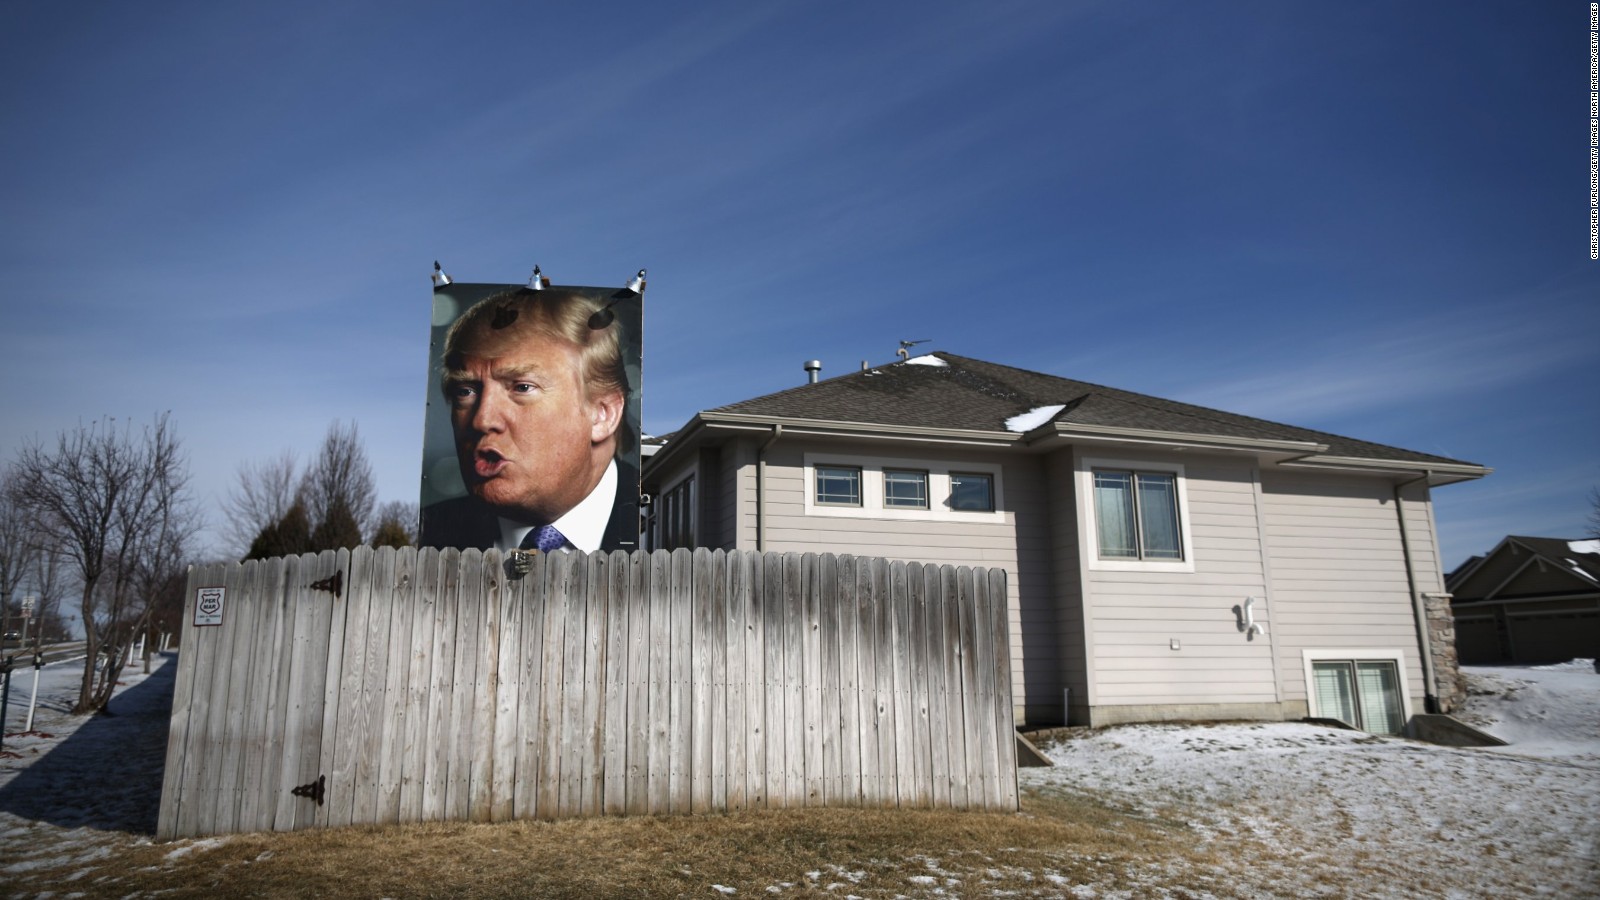 Un afiche gigante del candidato republicano en el jardín en una casa de uno de sus seguidores en West Des Moines, Iowa.